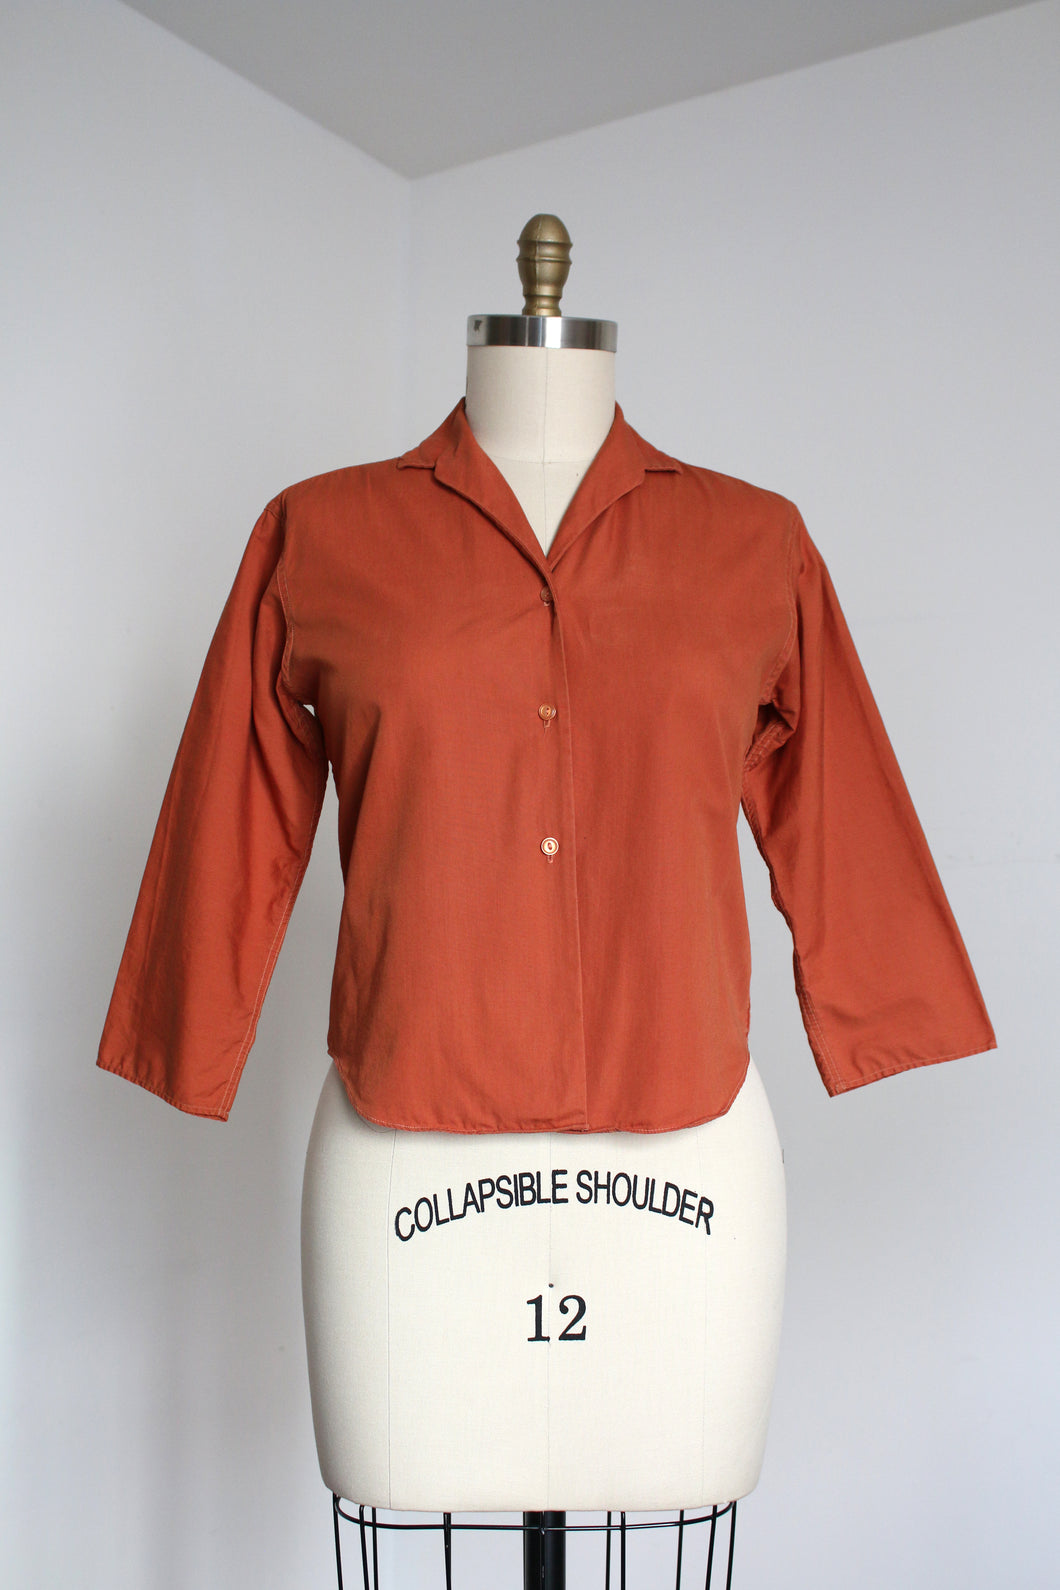 vintage 1950s cotton blouse {m}